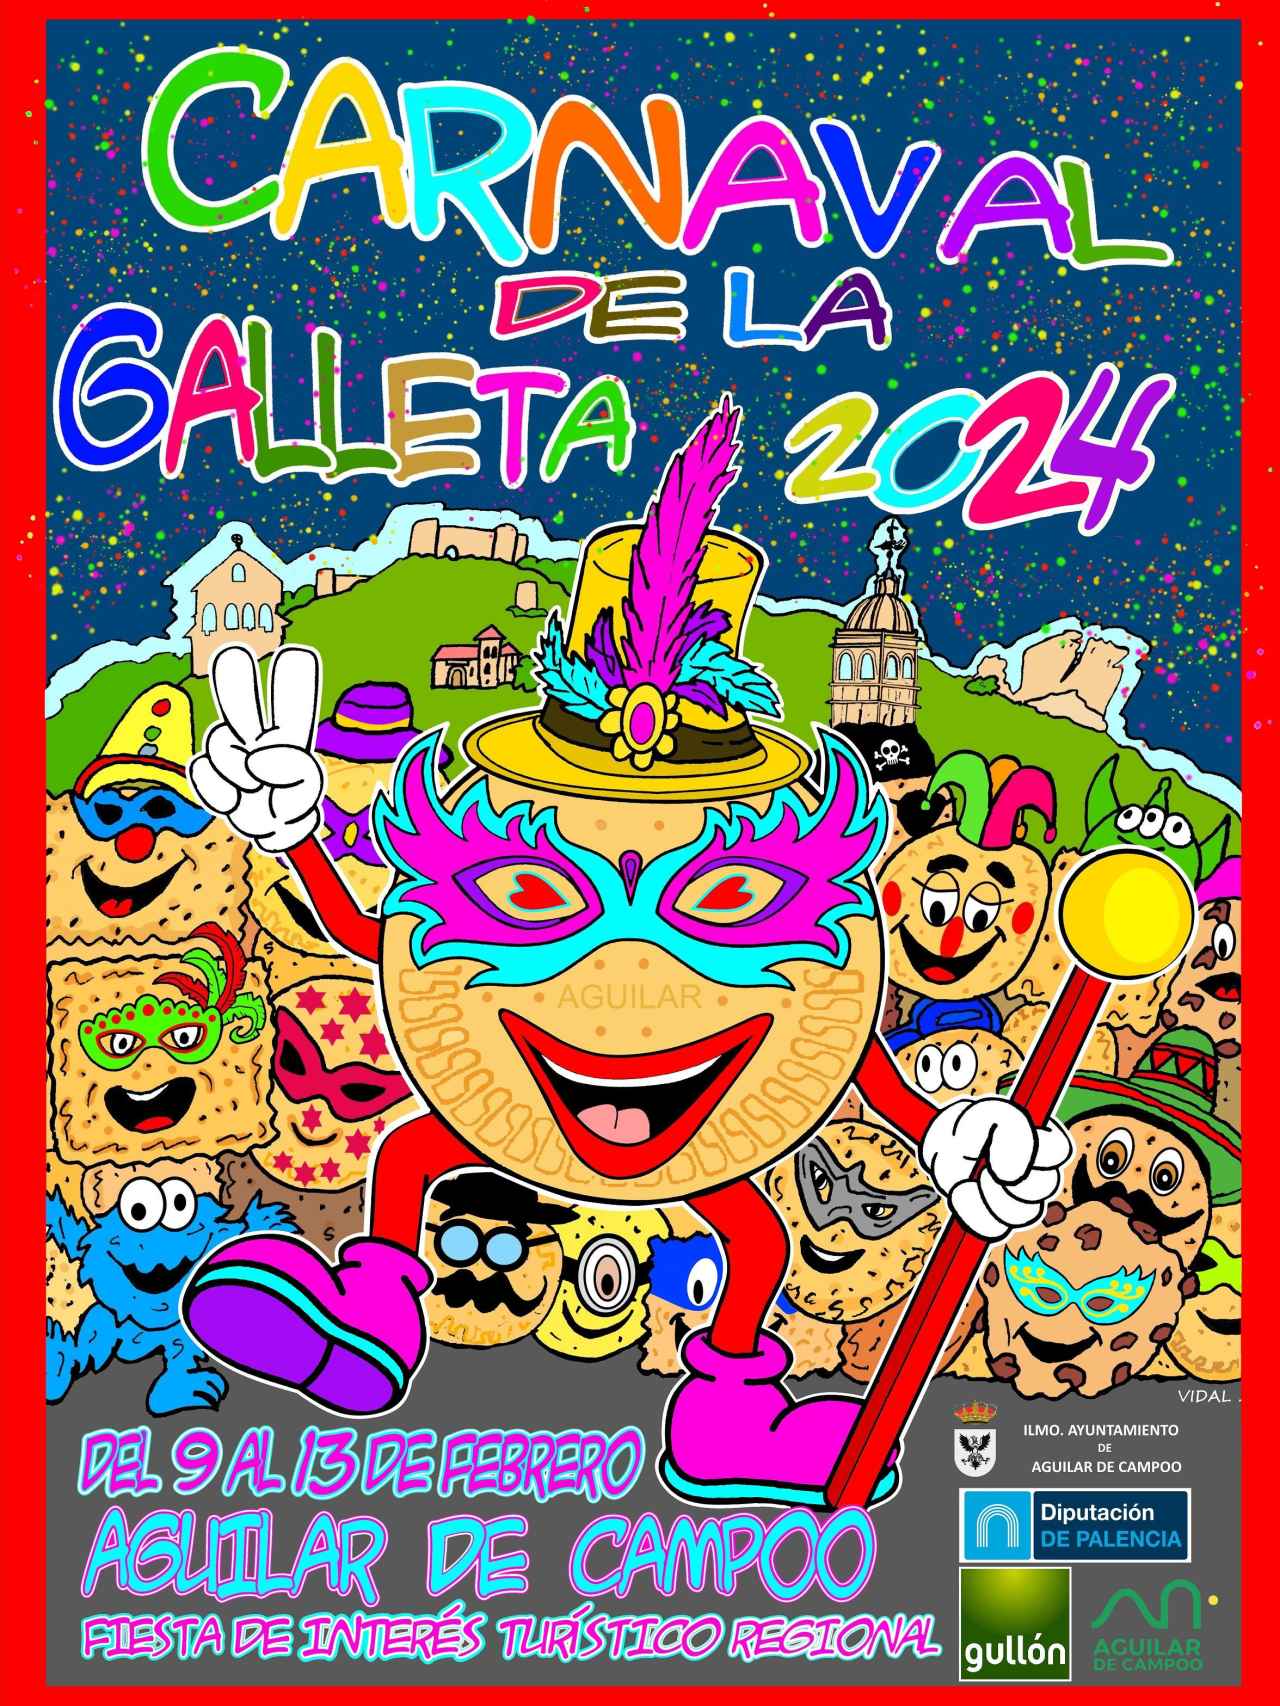 Carnaval de la Galleta Cartel.